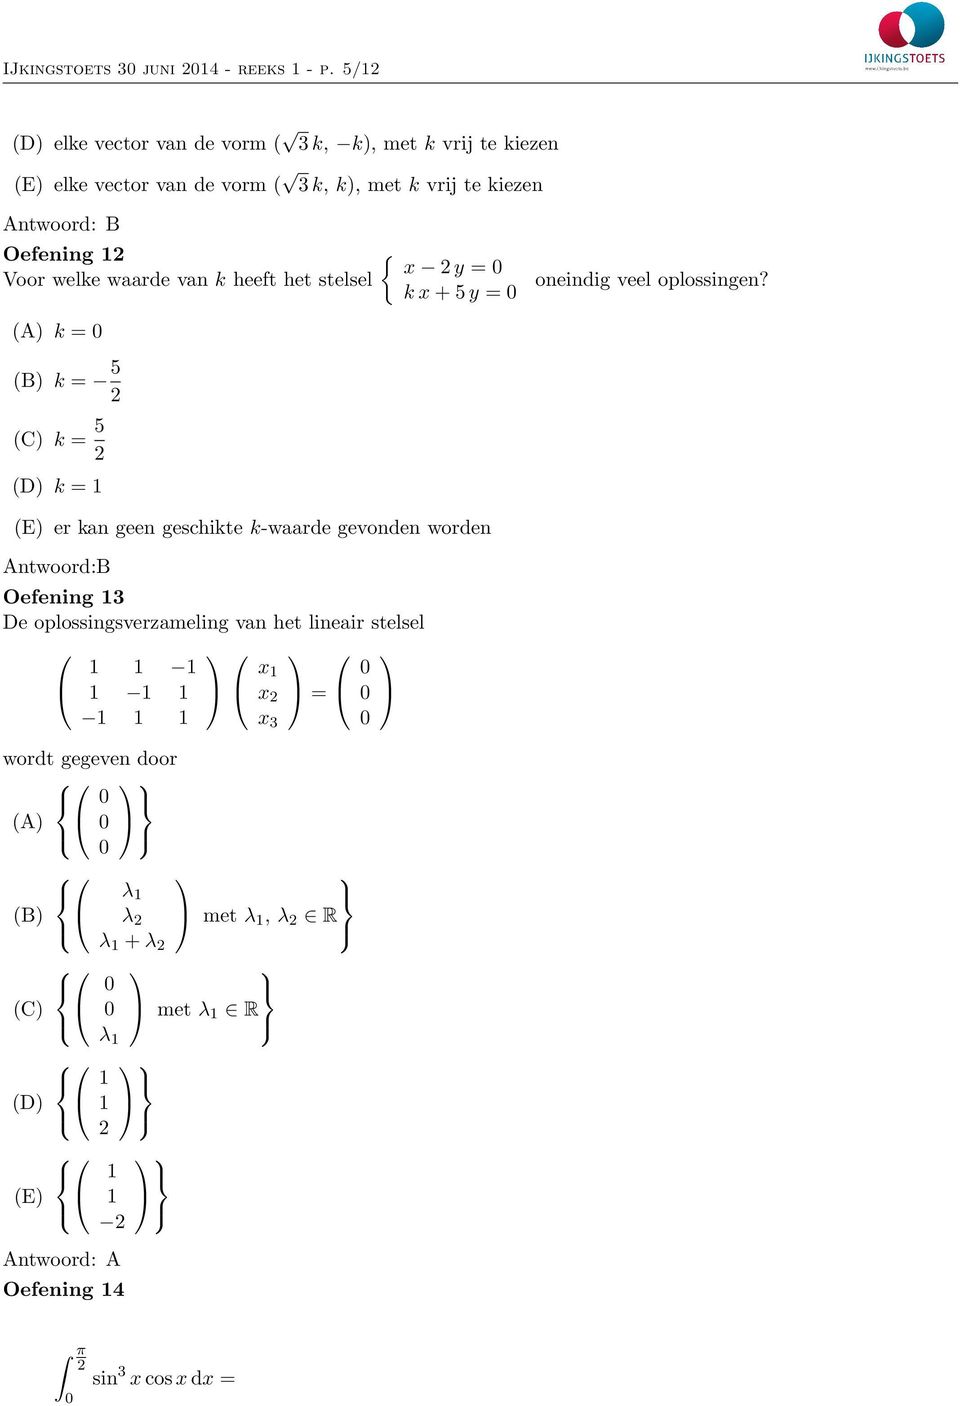 Oefening y = Voor welke waarde van k heeft het stelsel oneindig veel oplossingen?